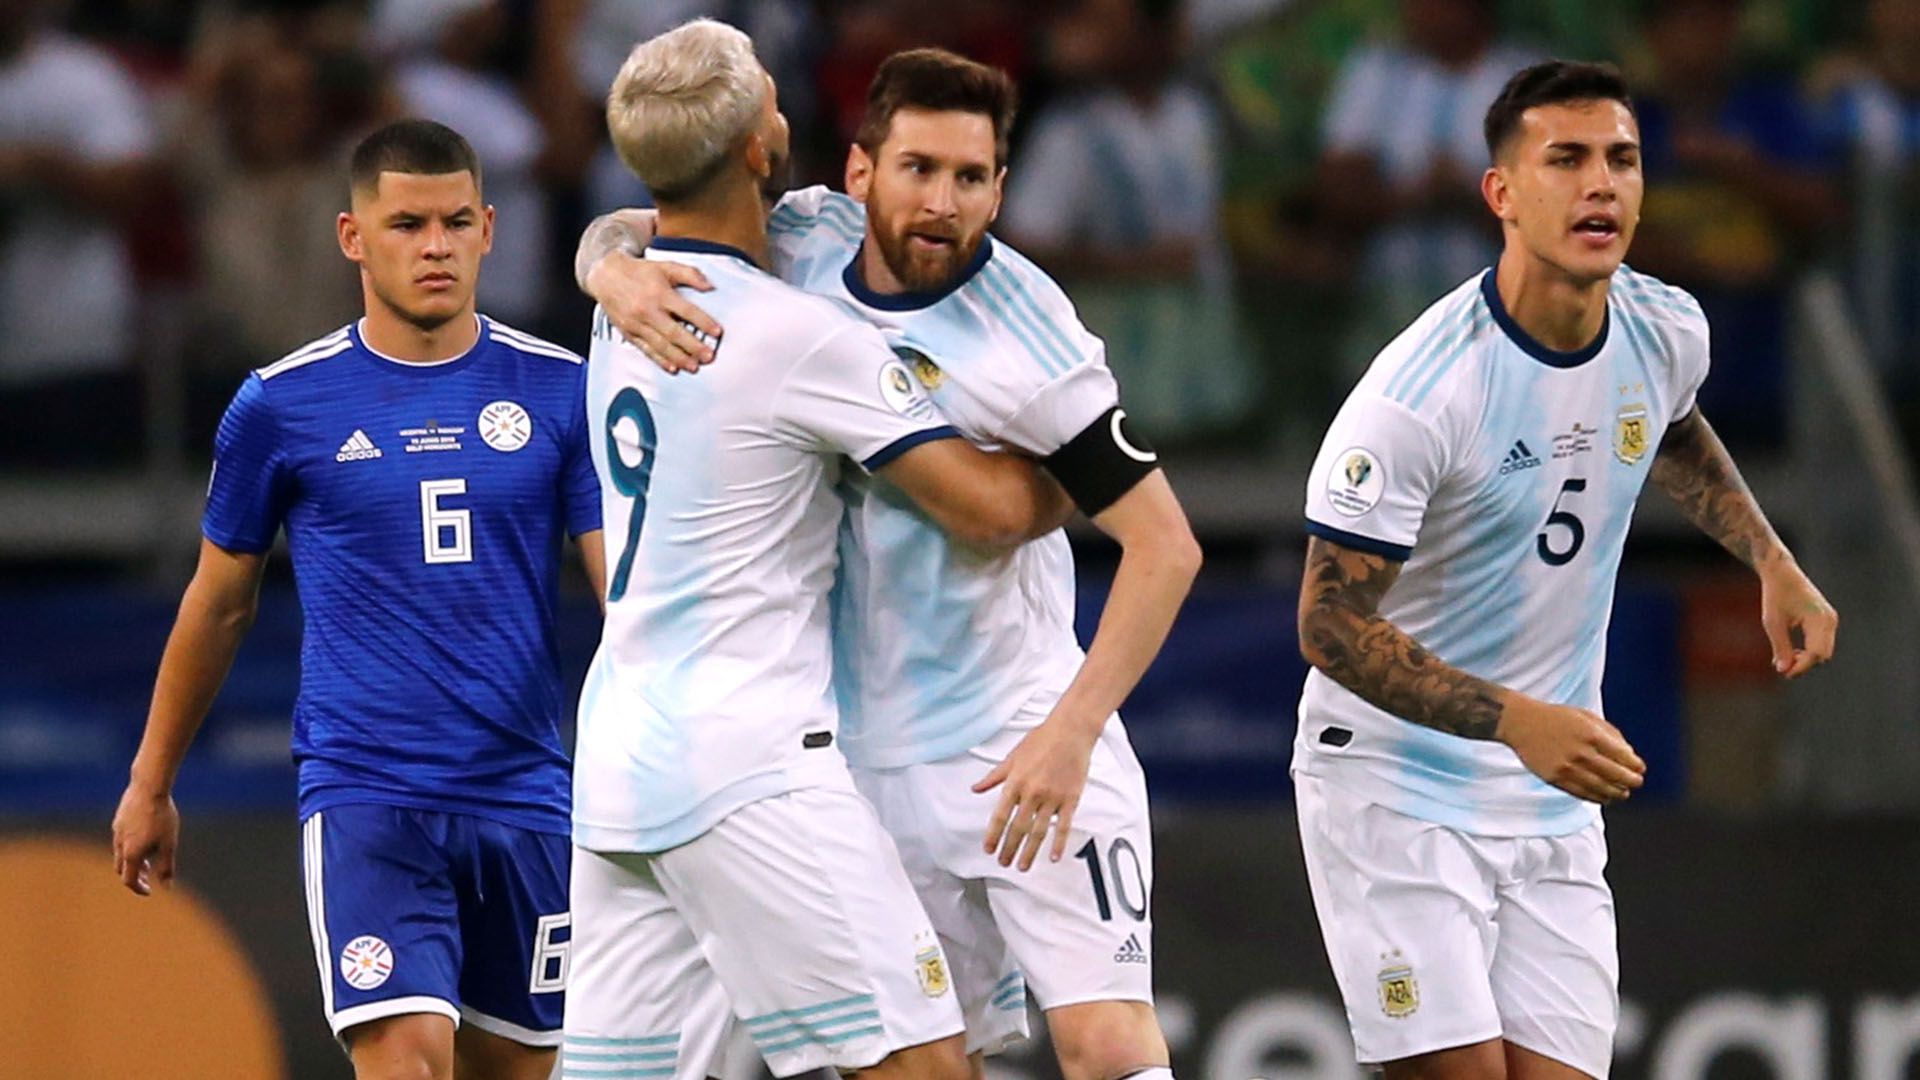 Messi y Agüero compartieron muchos momentos juntos en la selección - REUTERS/Luisa Gonzalez